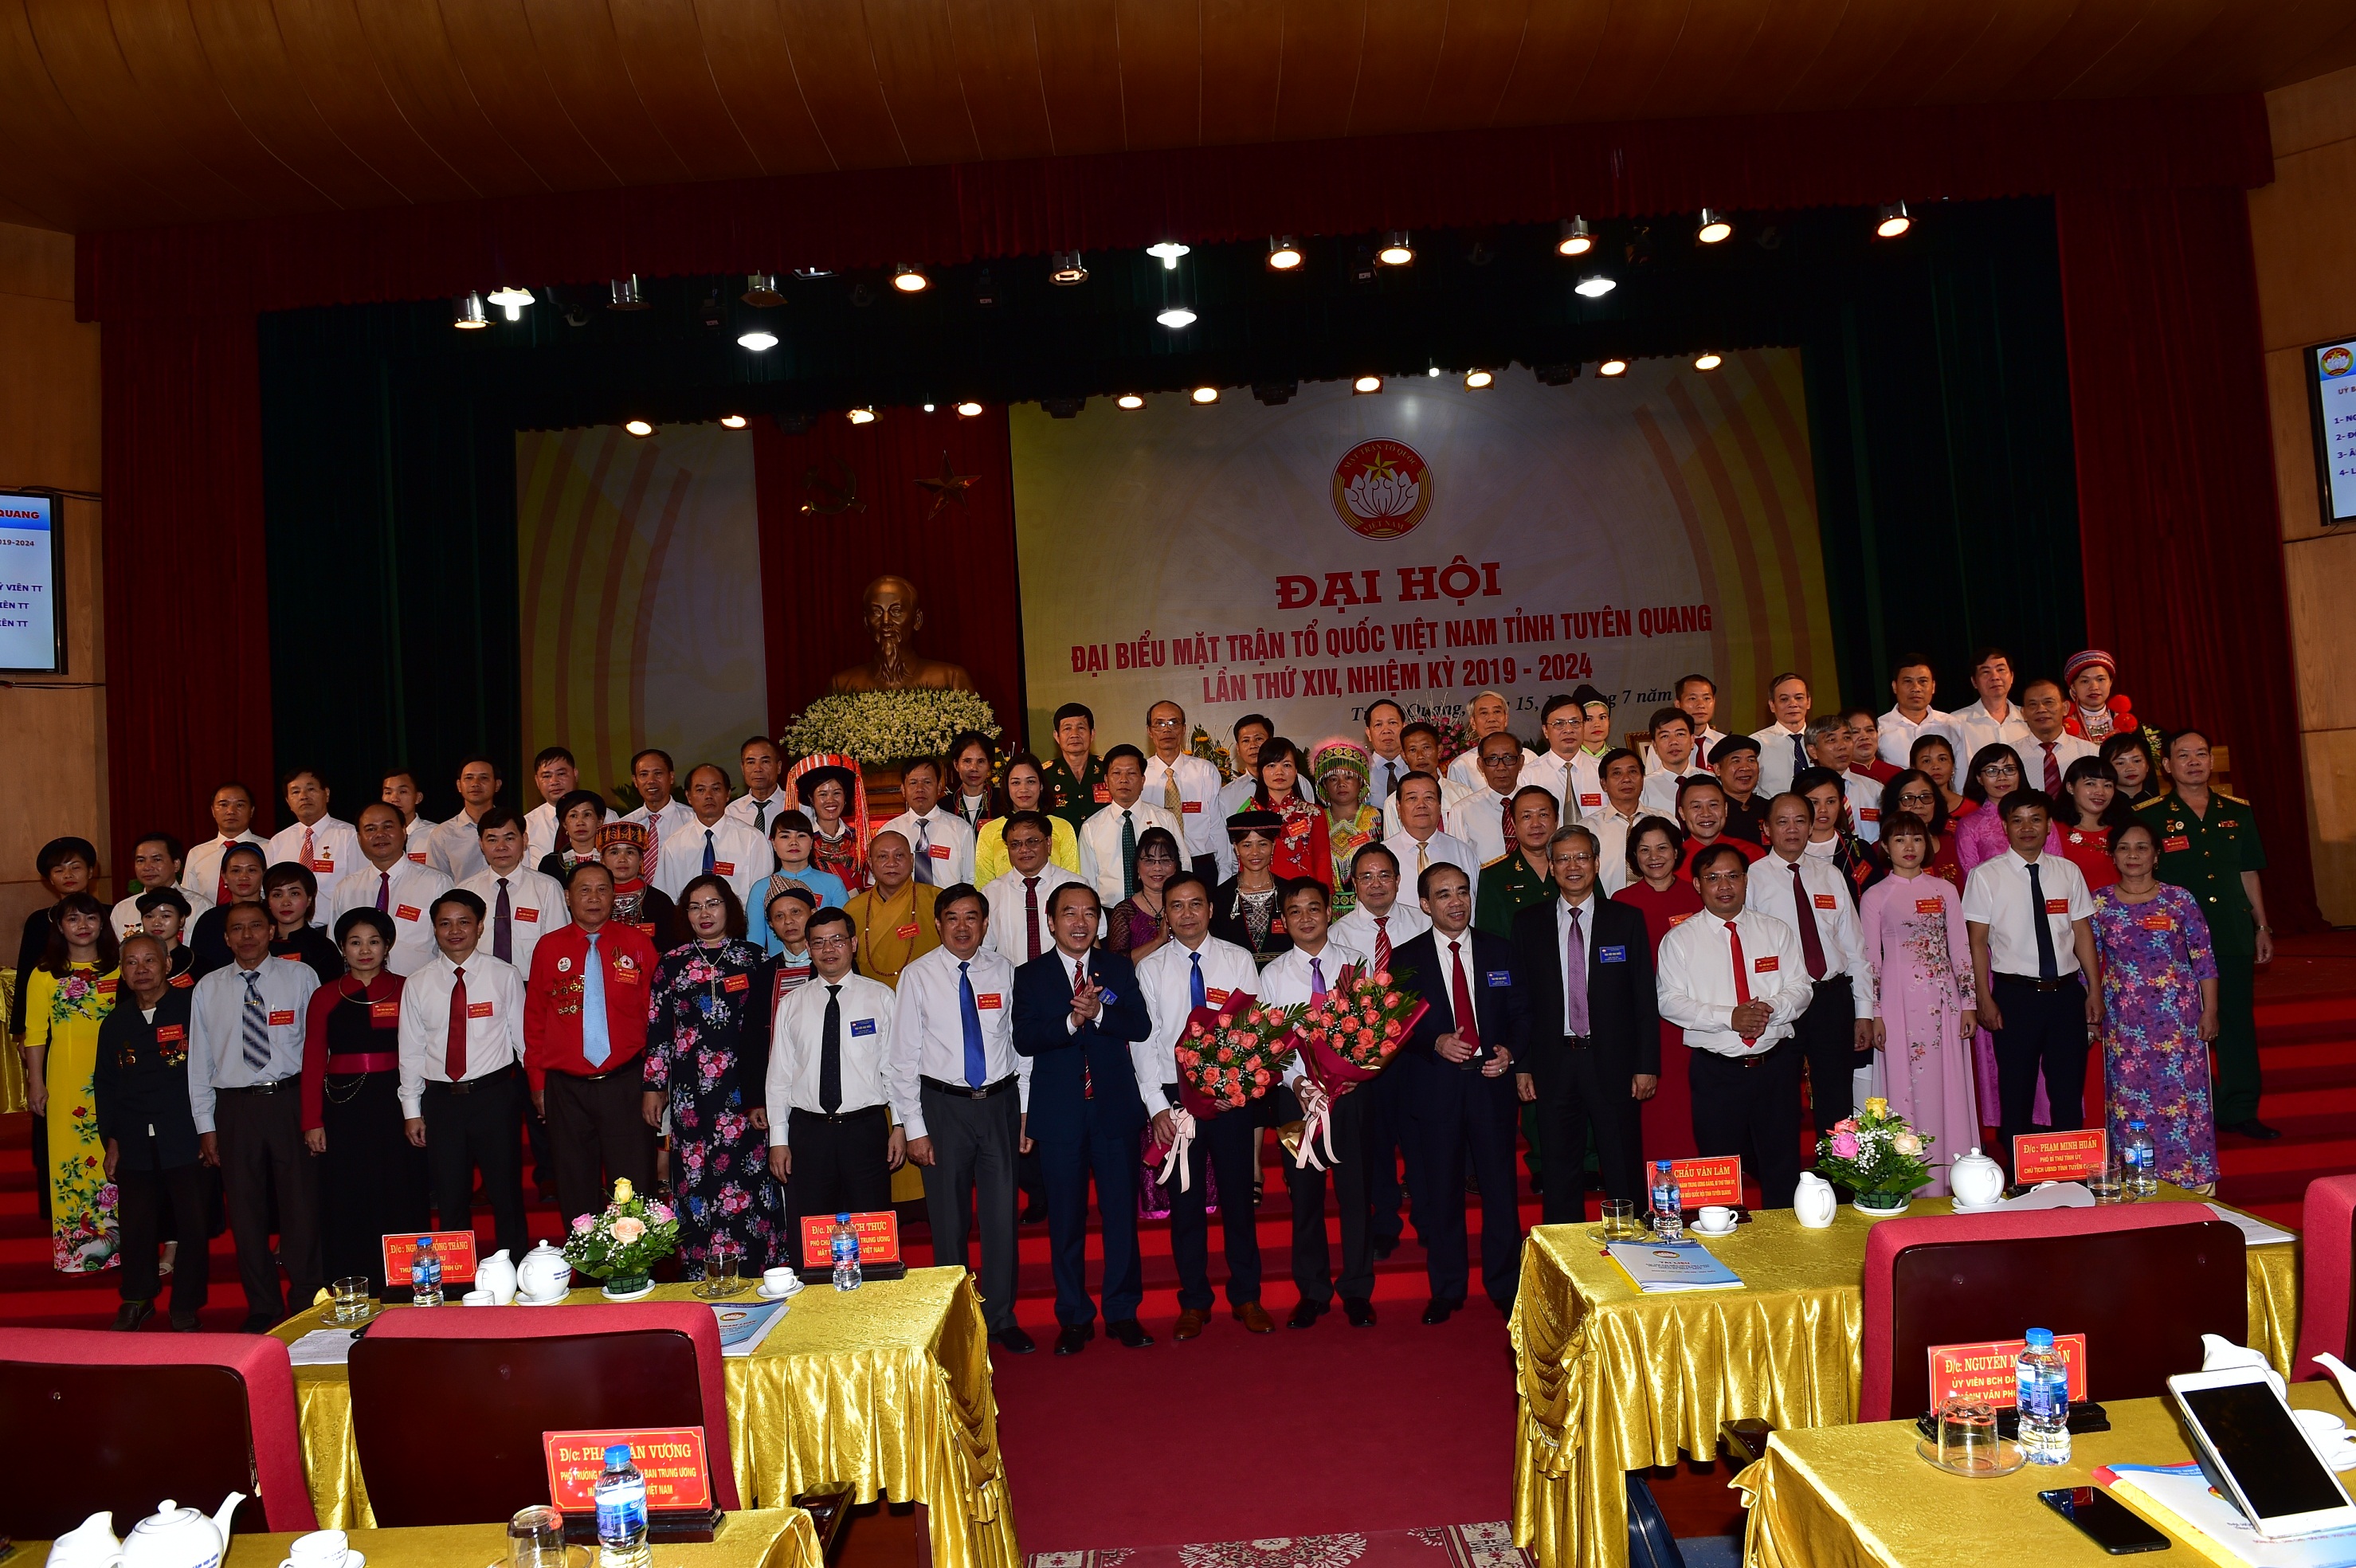 Ảnh Đại hội MTTQ tỉnh Tuyên Quang, nhiệm kỳ 2019 - 2024